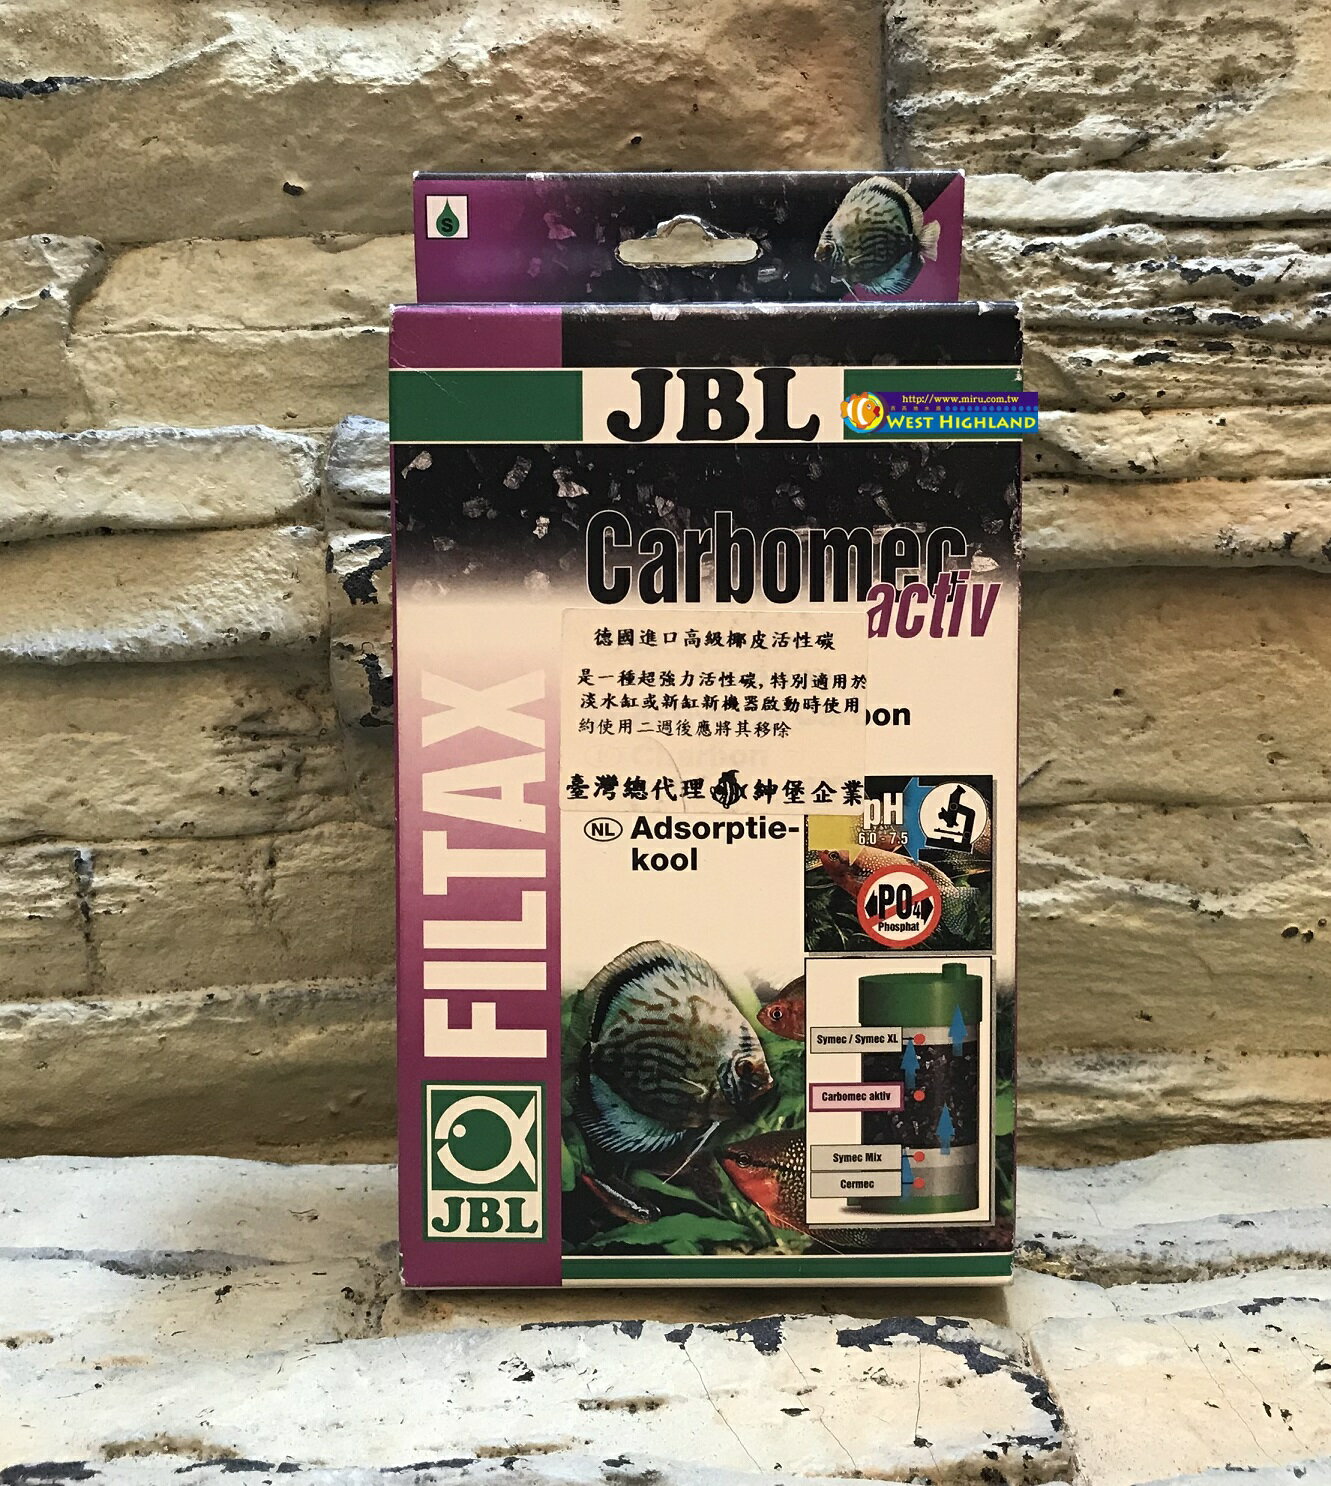 【西高地水族坊】德國JBL Carbomec activ 椰皮活性碳(400g盒裝)